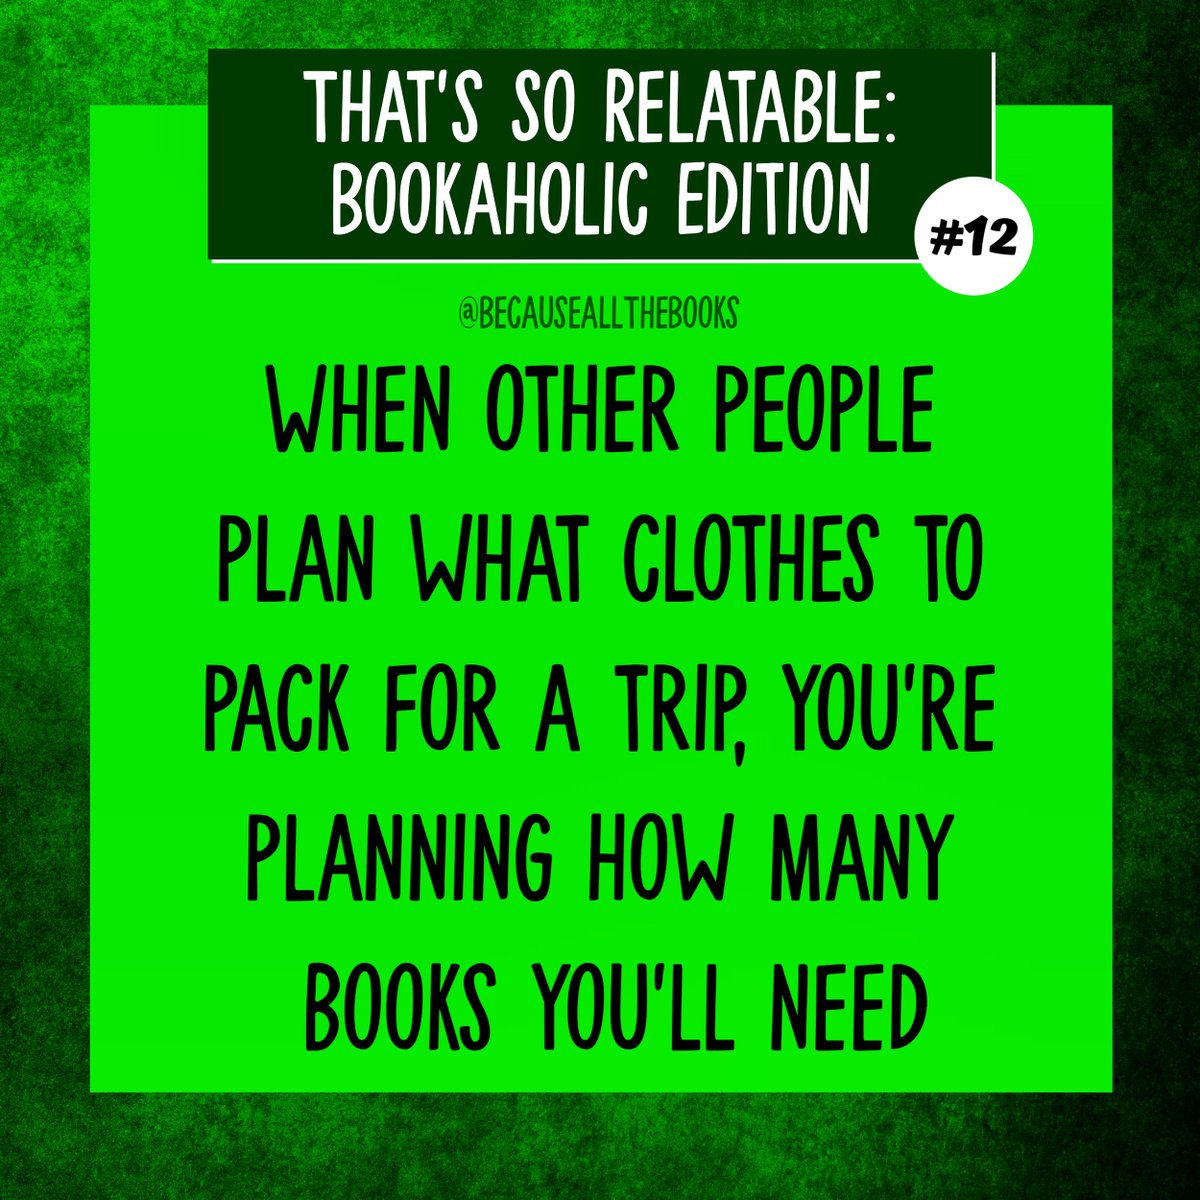 Priorities!

#BecauseAllTheBooks #ThatsSoRelatable #Bookworms #TotalBookNerd #BookAddicted  #PrioritiesFirst